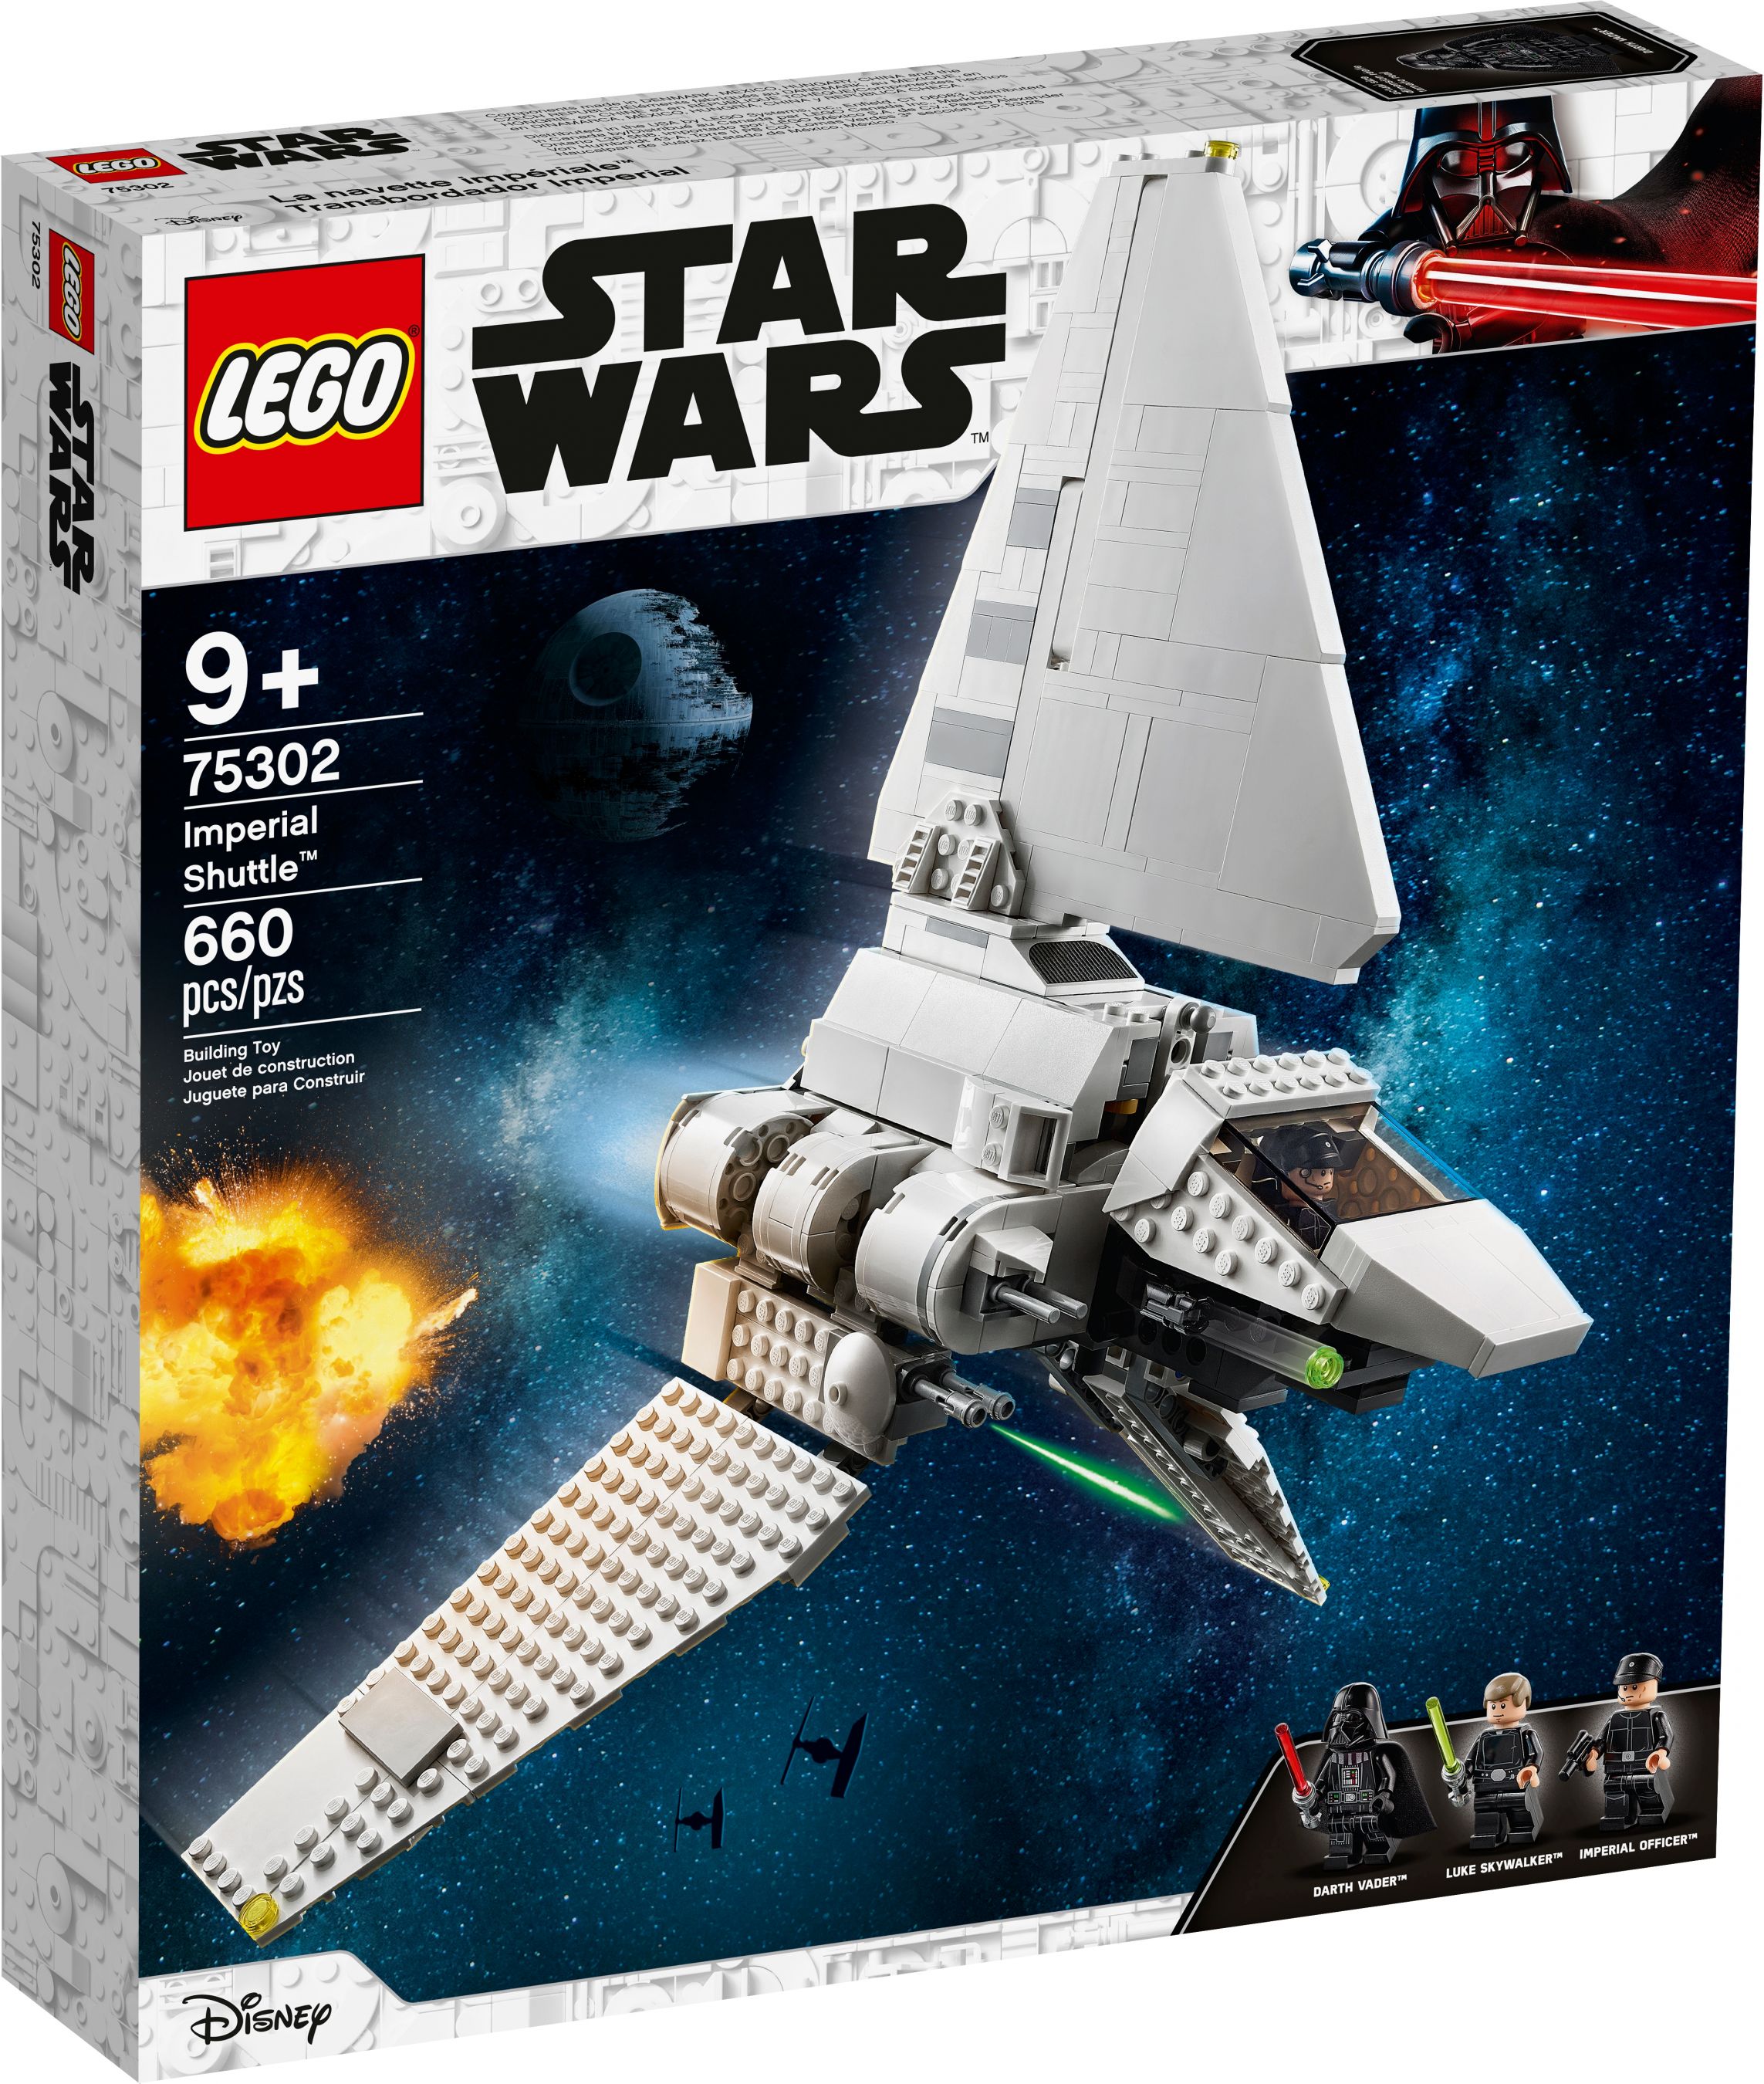 LEGO Star Wars 75302 Imperial Shuttle™ LEGO_75302_alt1.jpg